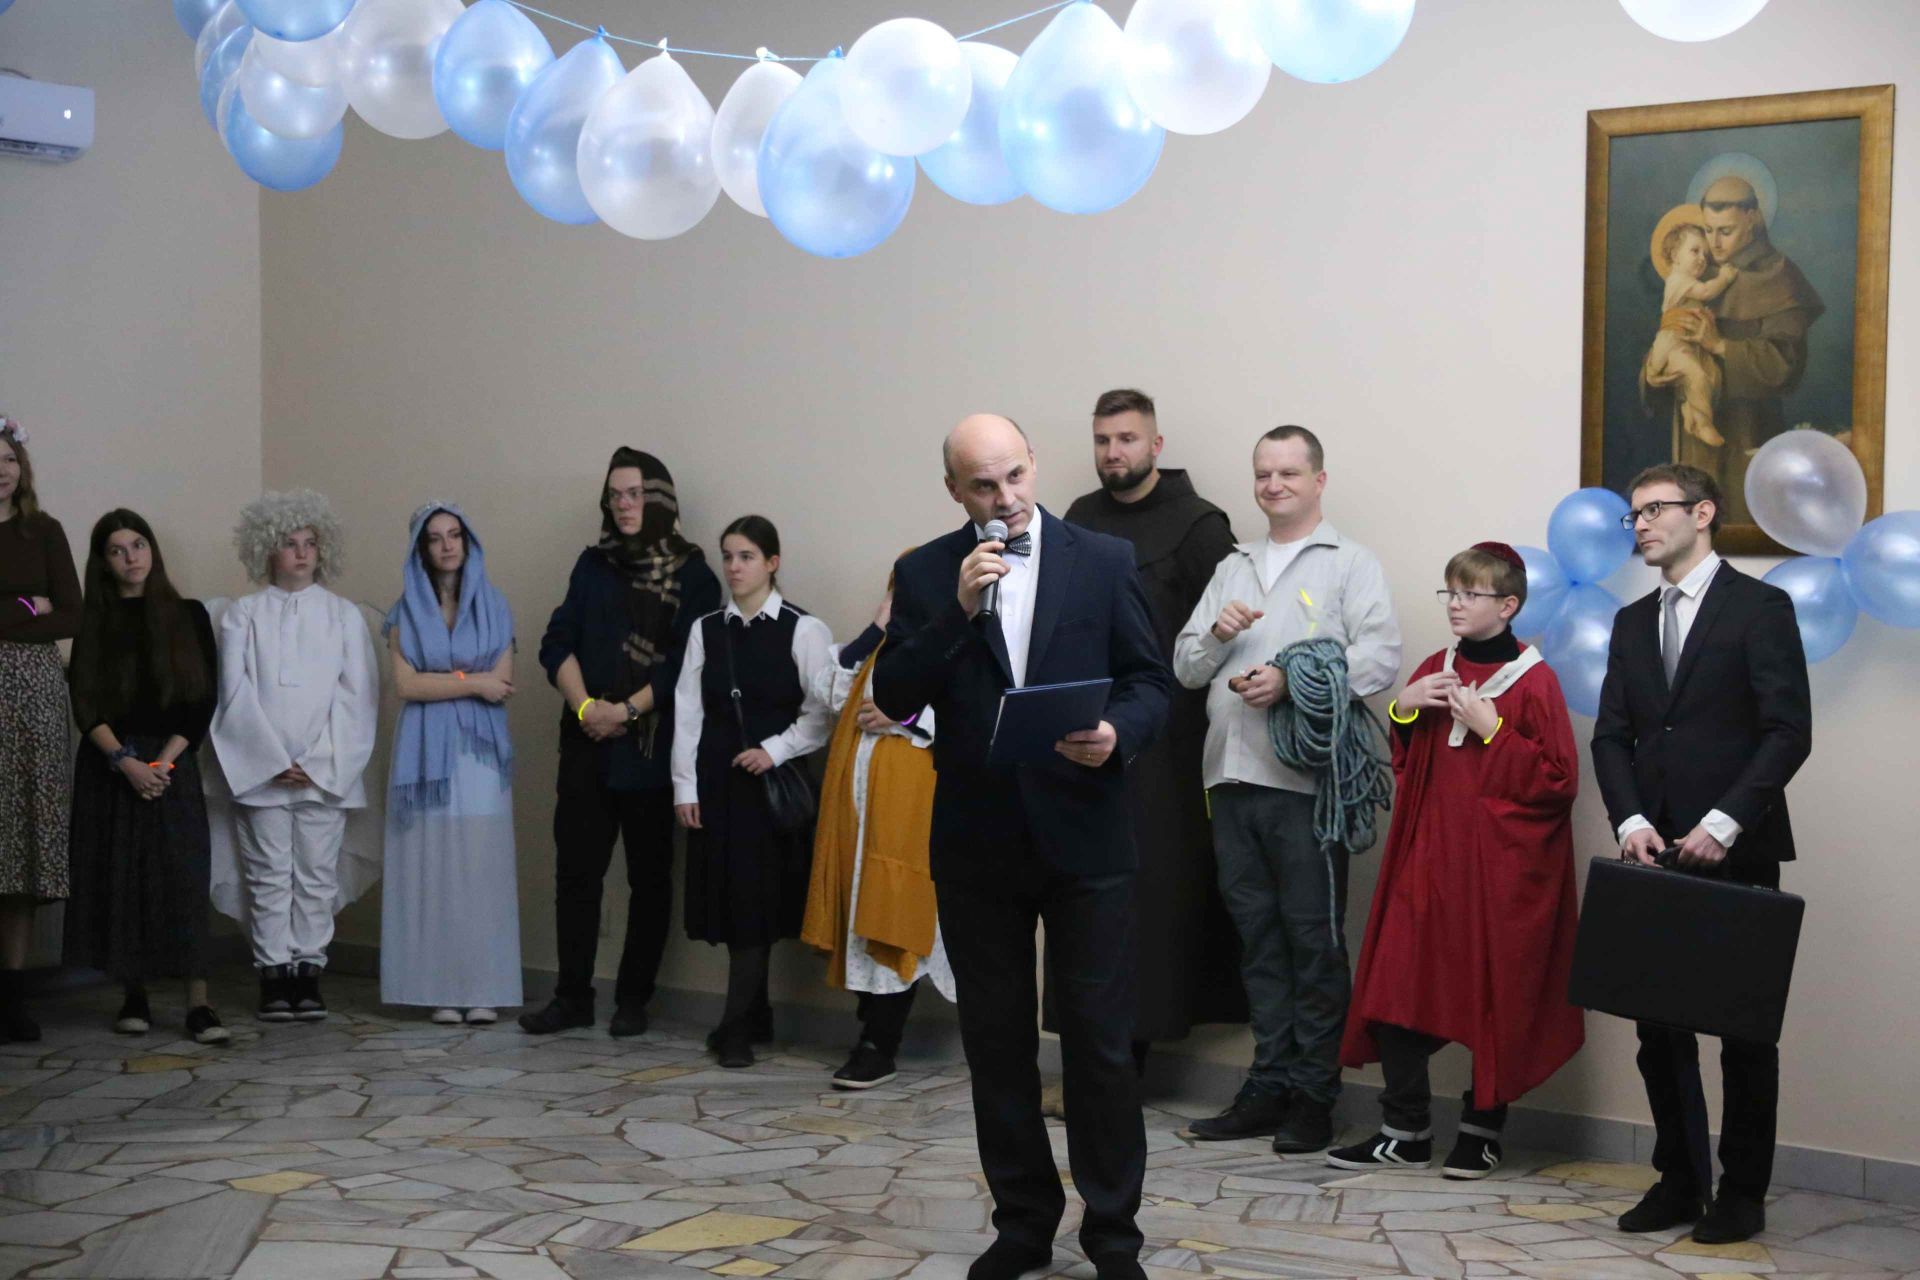 Otwierając wigilijną zabawę wszystkich świętych ks. Marek Bernacki życzył młodzieży dobrej zabawy i świętości. Zdj. Wacław Troszka